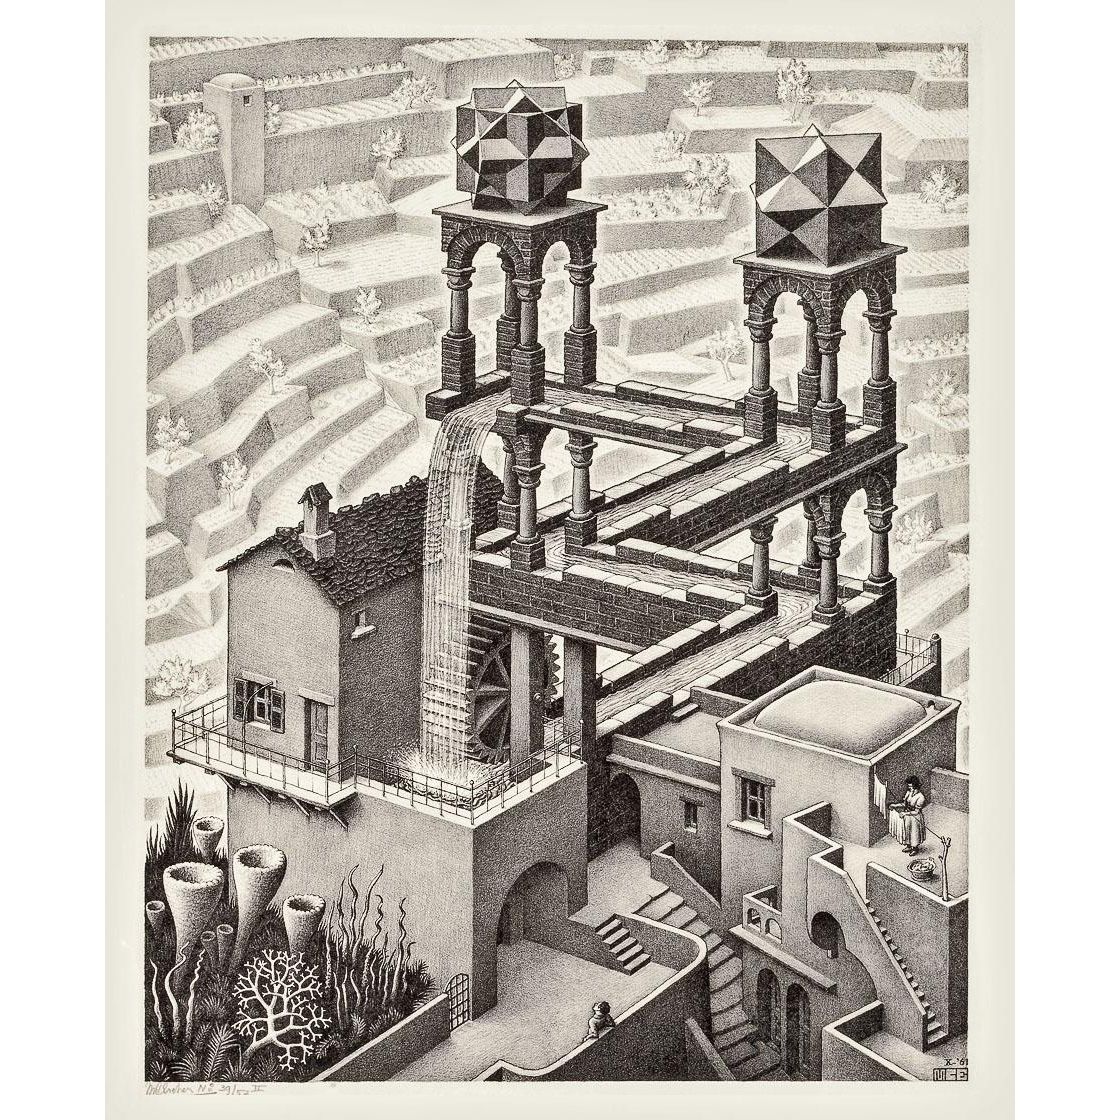 Maurits Cornelis Escher. Waterfall. 1961